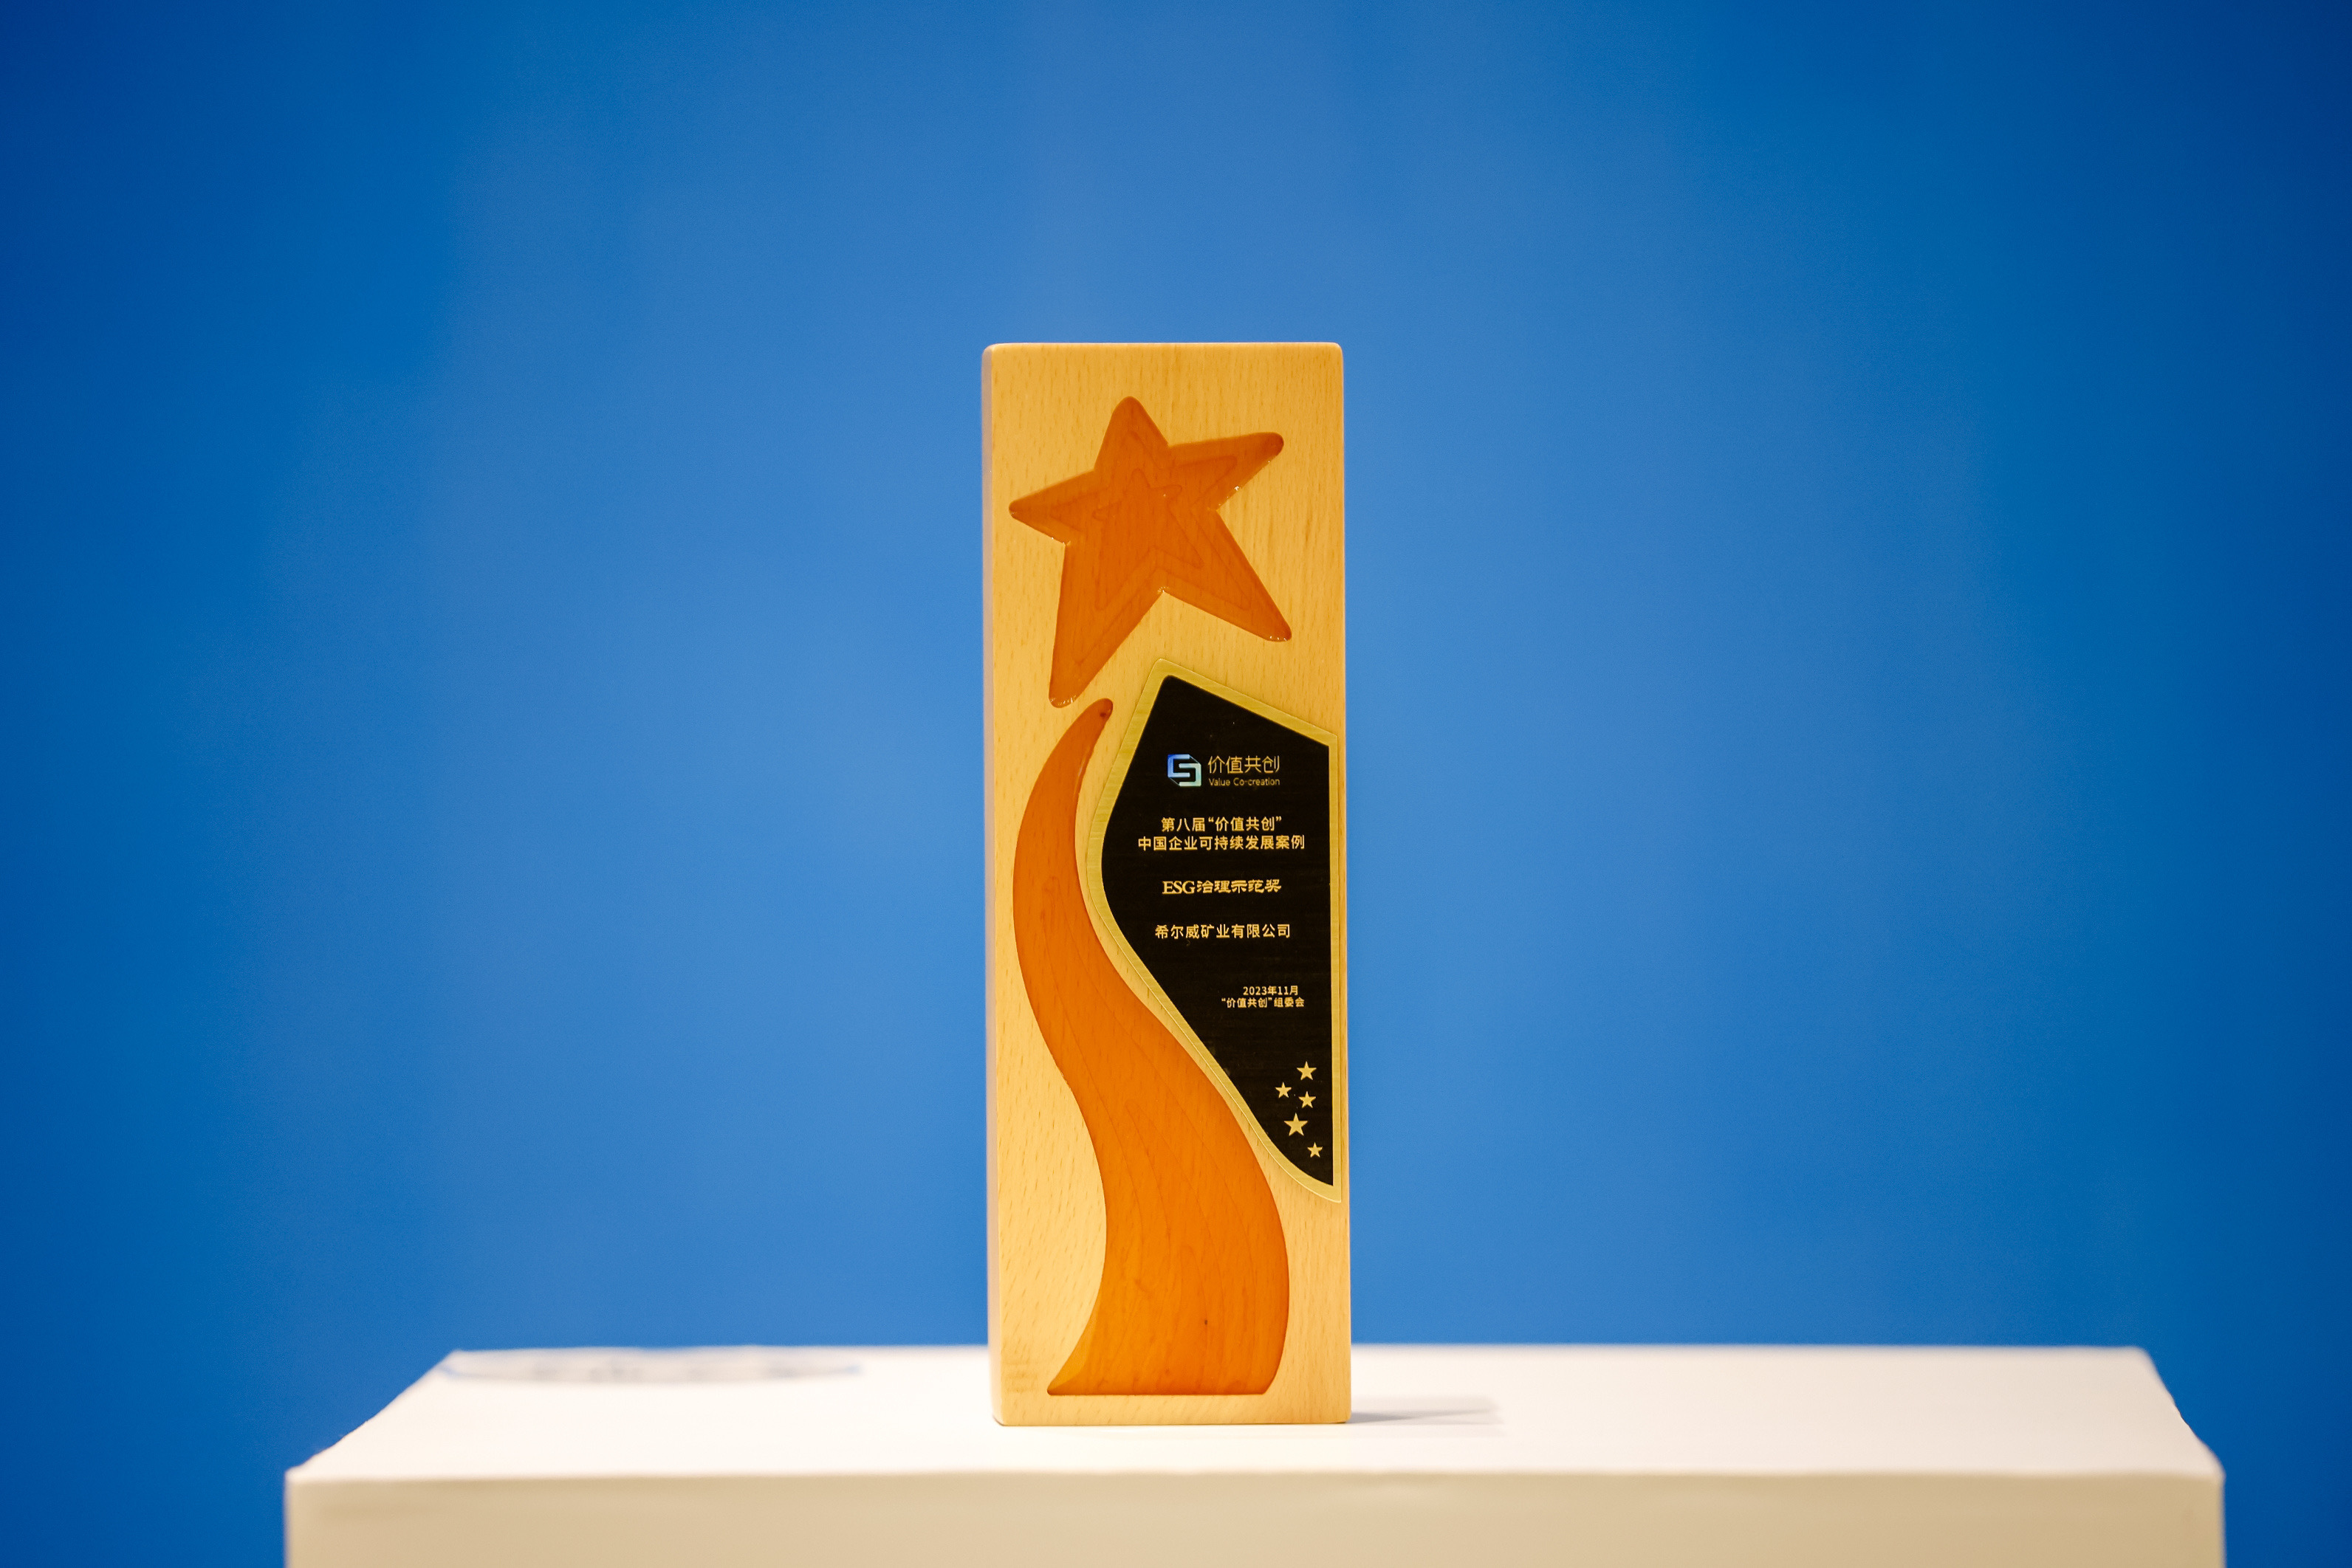 希尔威荣获“ESG治理示范奖” 为可持续发展树立行业典范